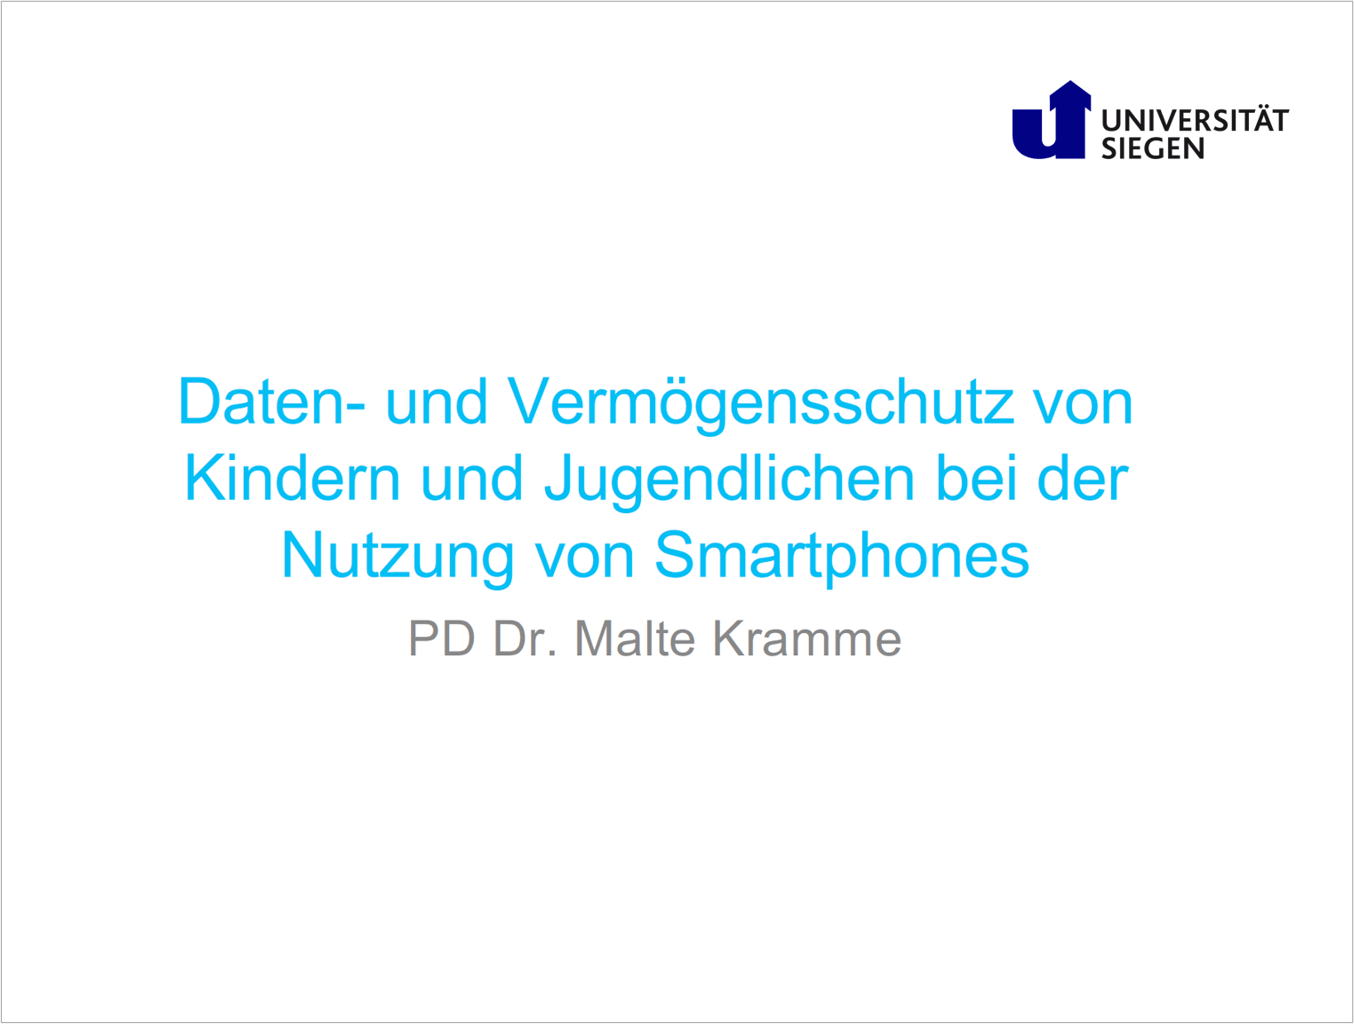 Dr. Malte Kramme